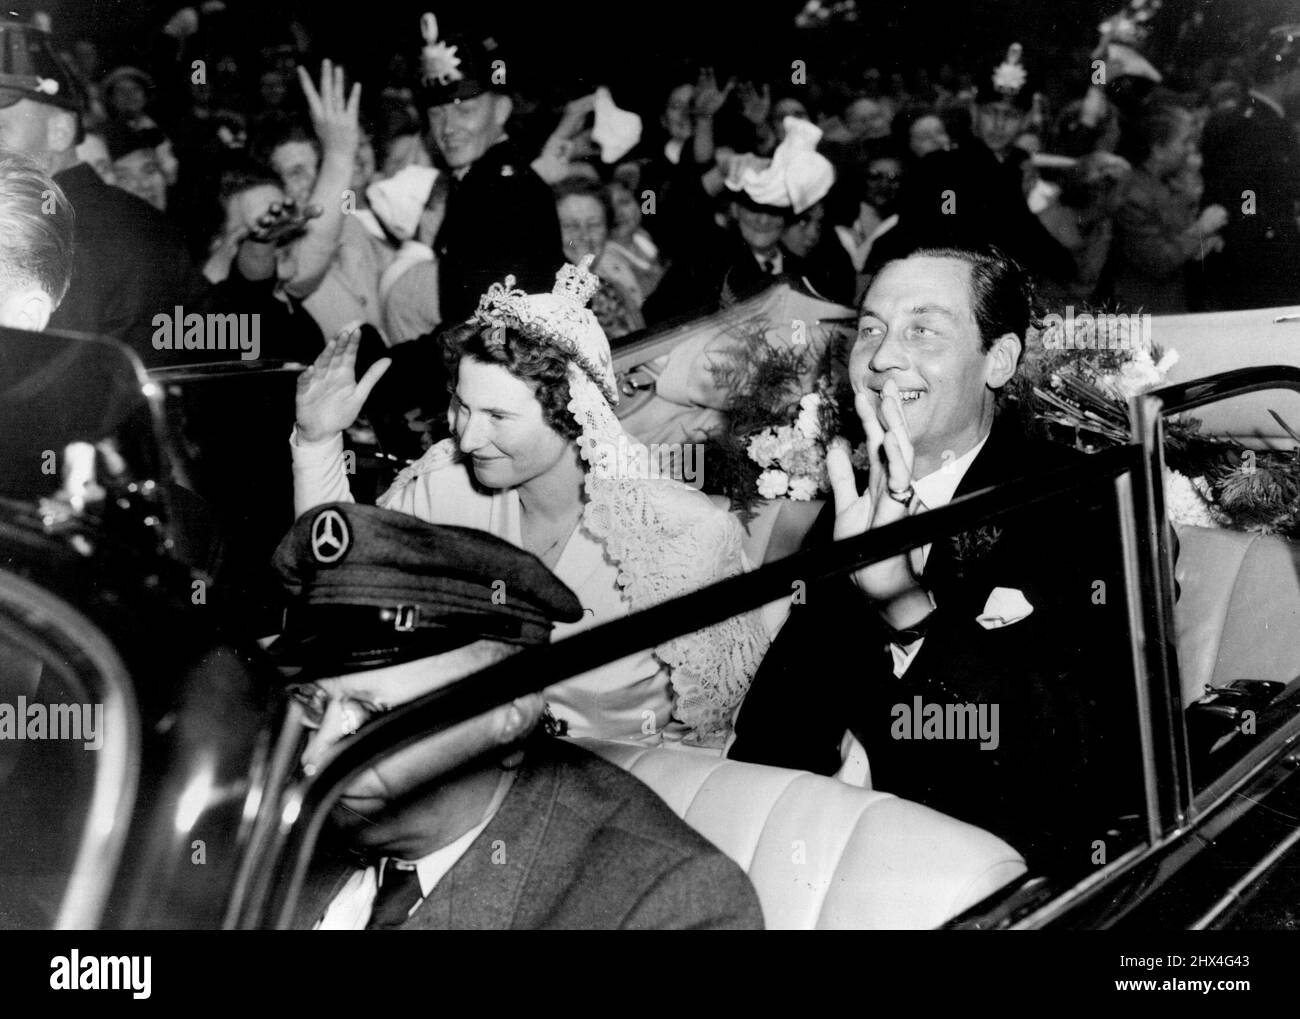 Ankunft zur Hochzeit - Prinz Ernst August von Hannover und Prinzessin Ortrud zu Schleswig-Holstein Sonderburg-Gluecksburg winken den jubelnden Massen bei der Ankunft in der Marktkirche hier für ihre kirchliche Hochzeit zu. 6. September 1951. Stockfoto